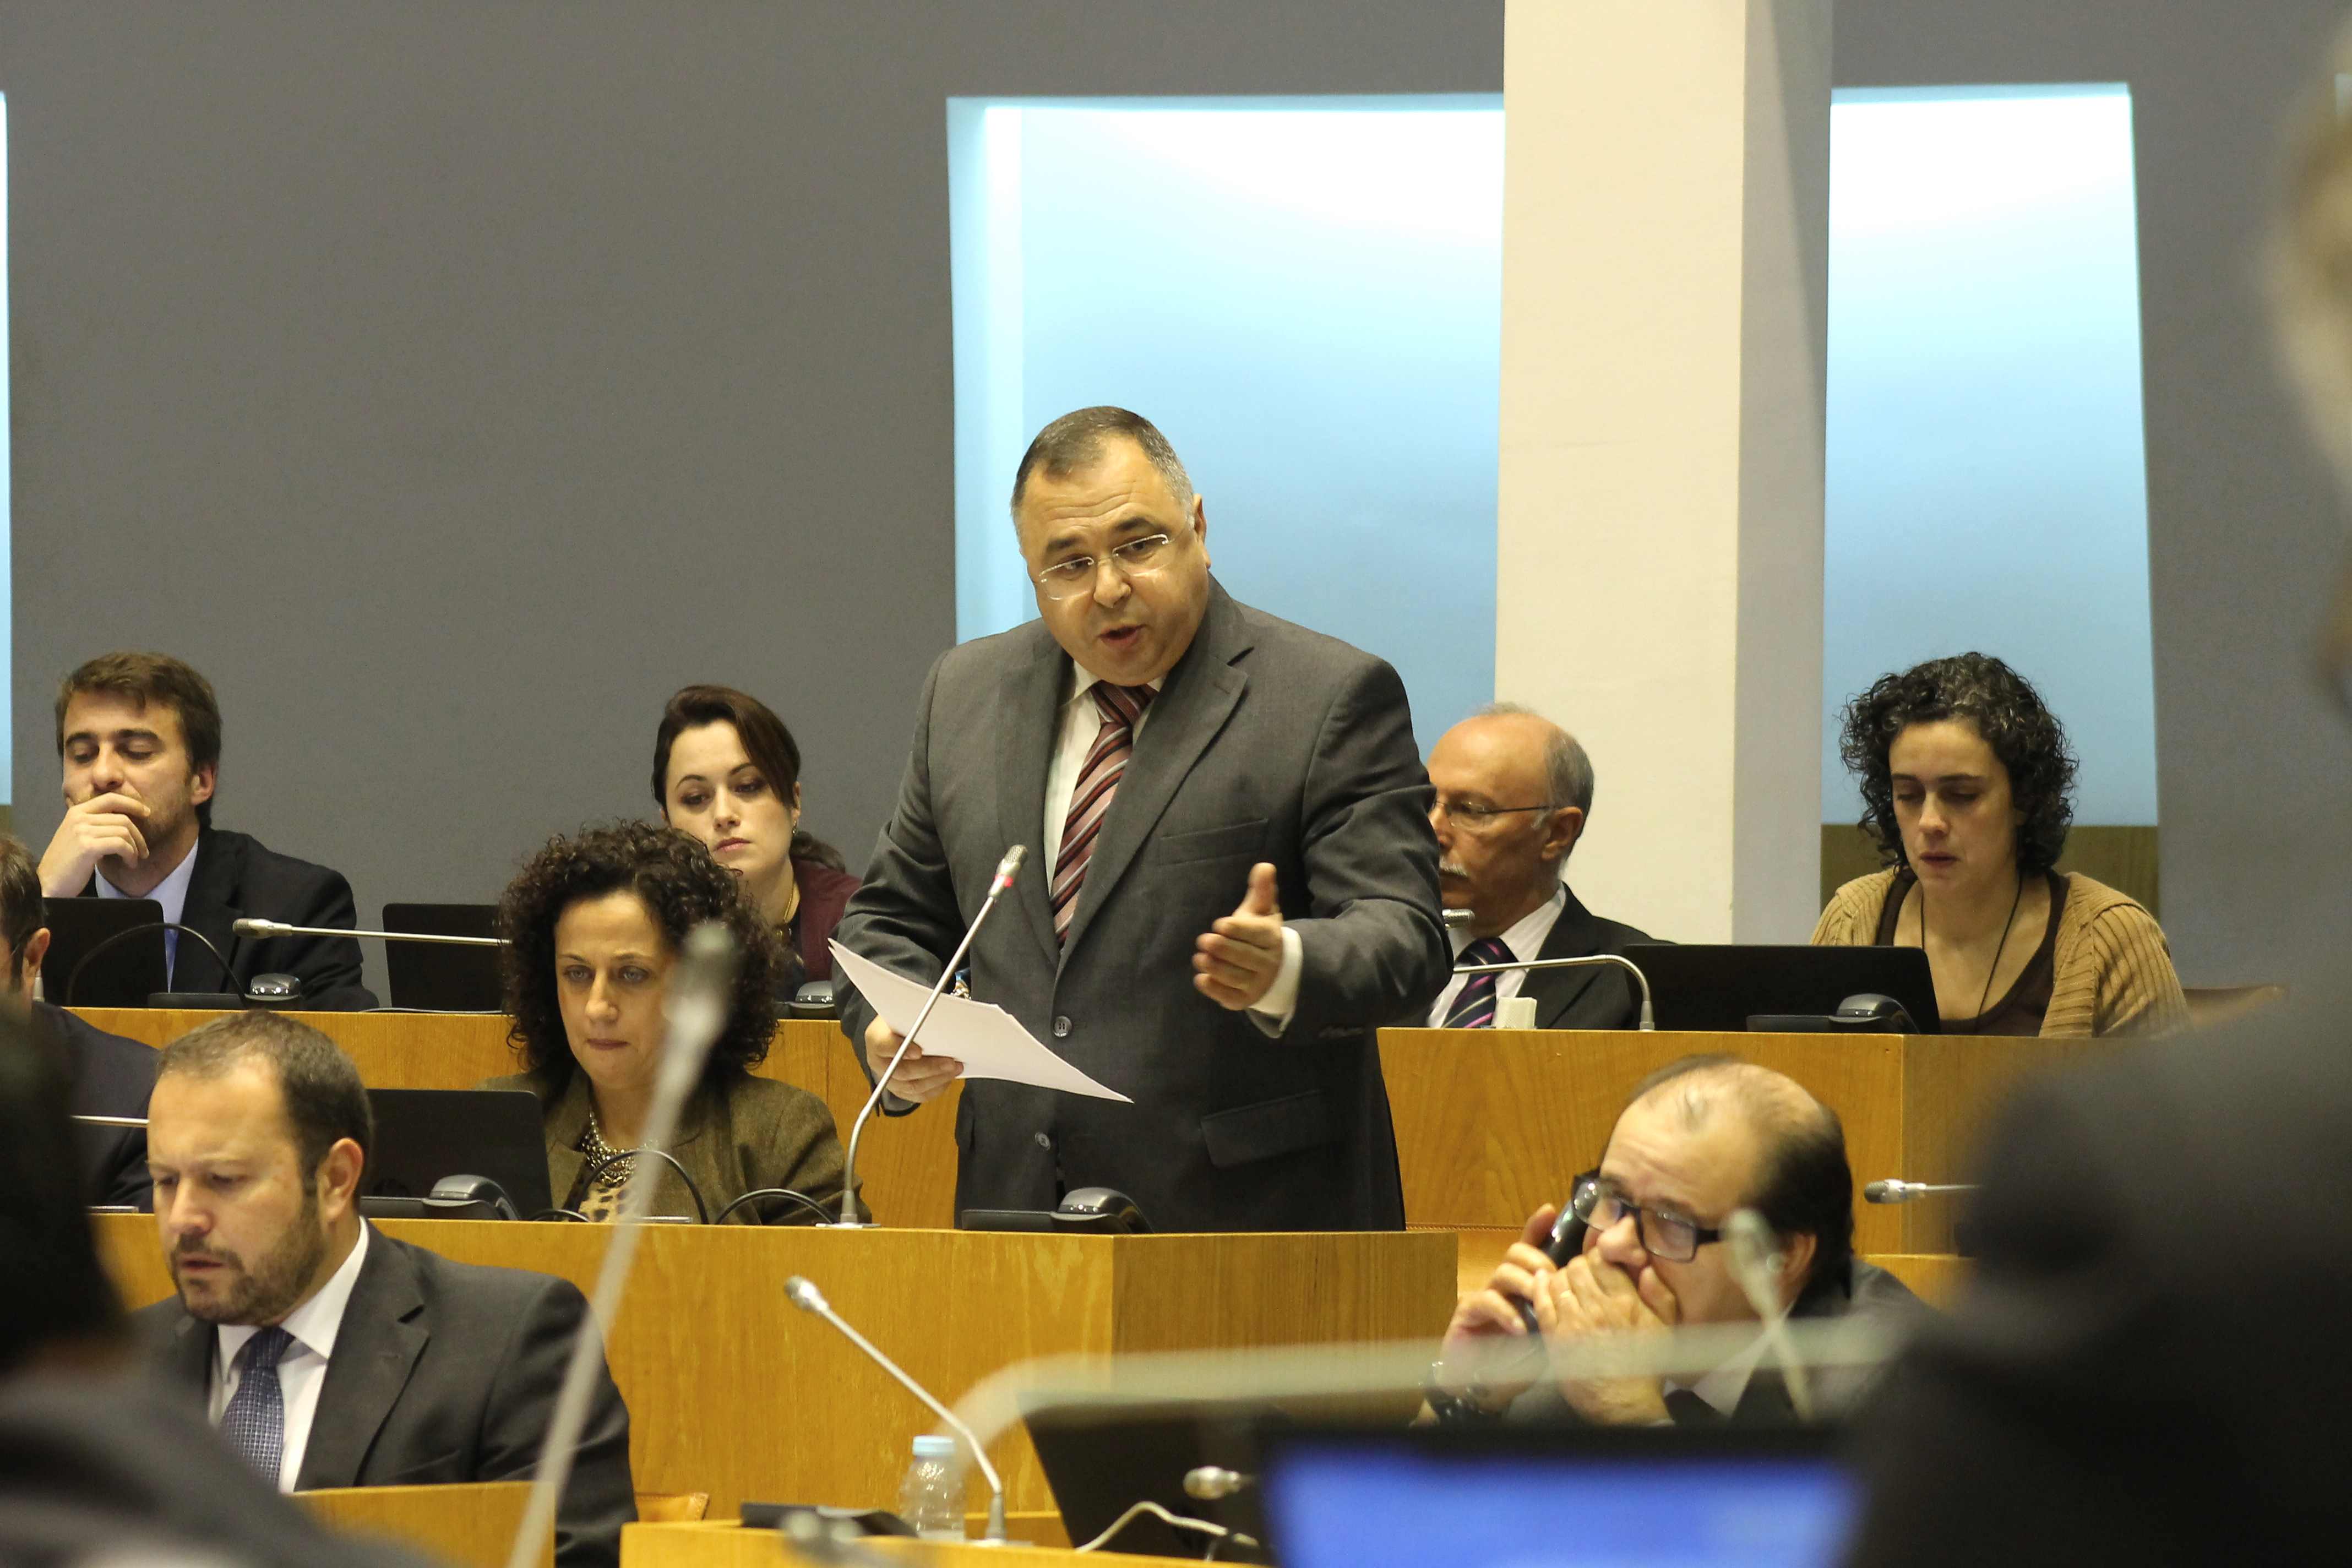 “Proposta do Governo dos Açores permitirá atrair mais investimentos de aquacultura para a Região”, destacou José Ávila